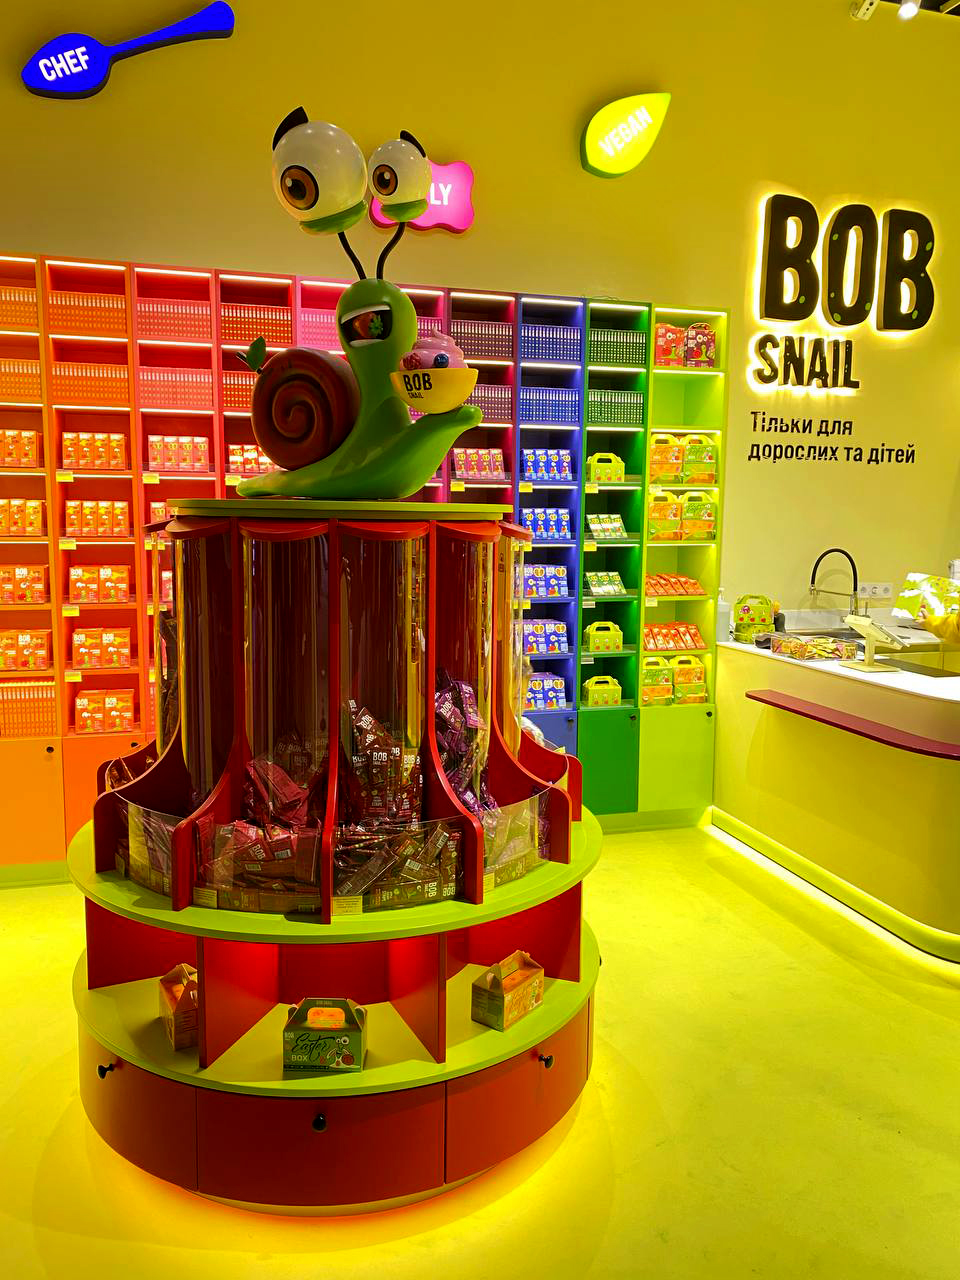 Bob Snail - украинский бренд полезных сладостей